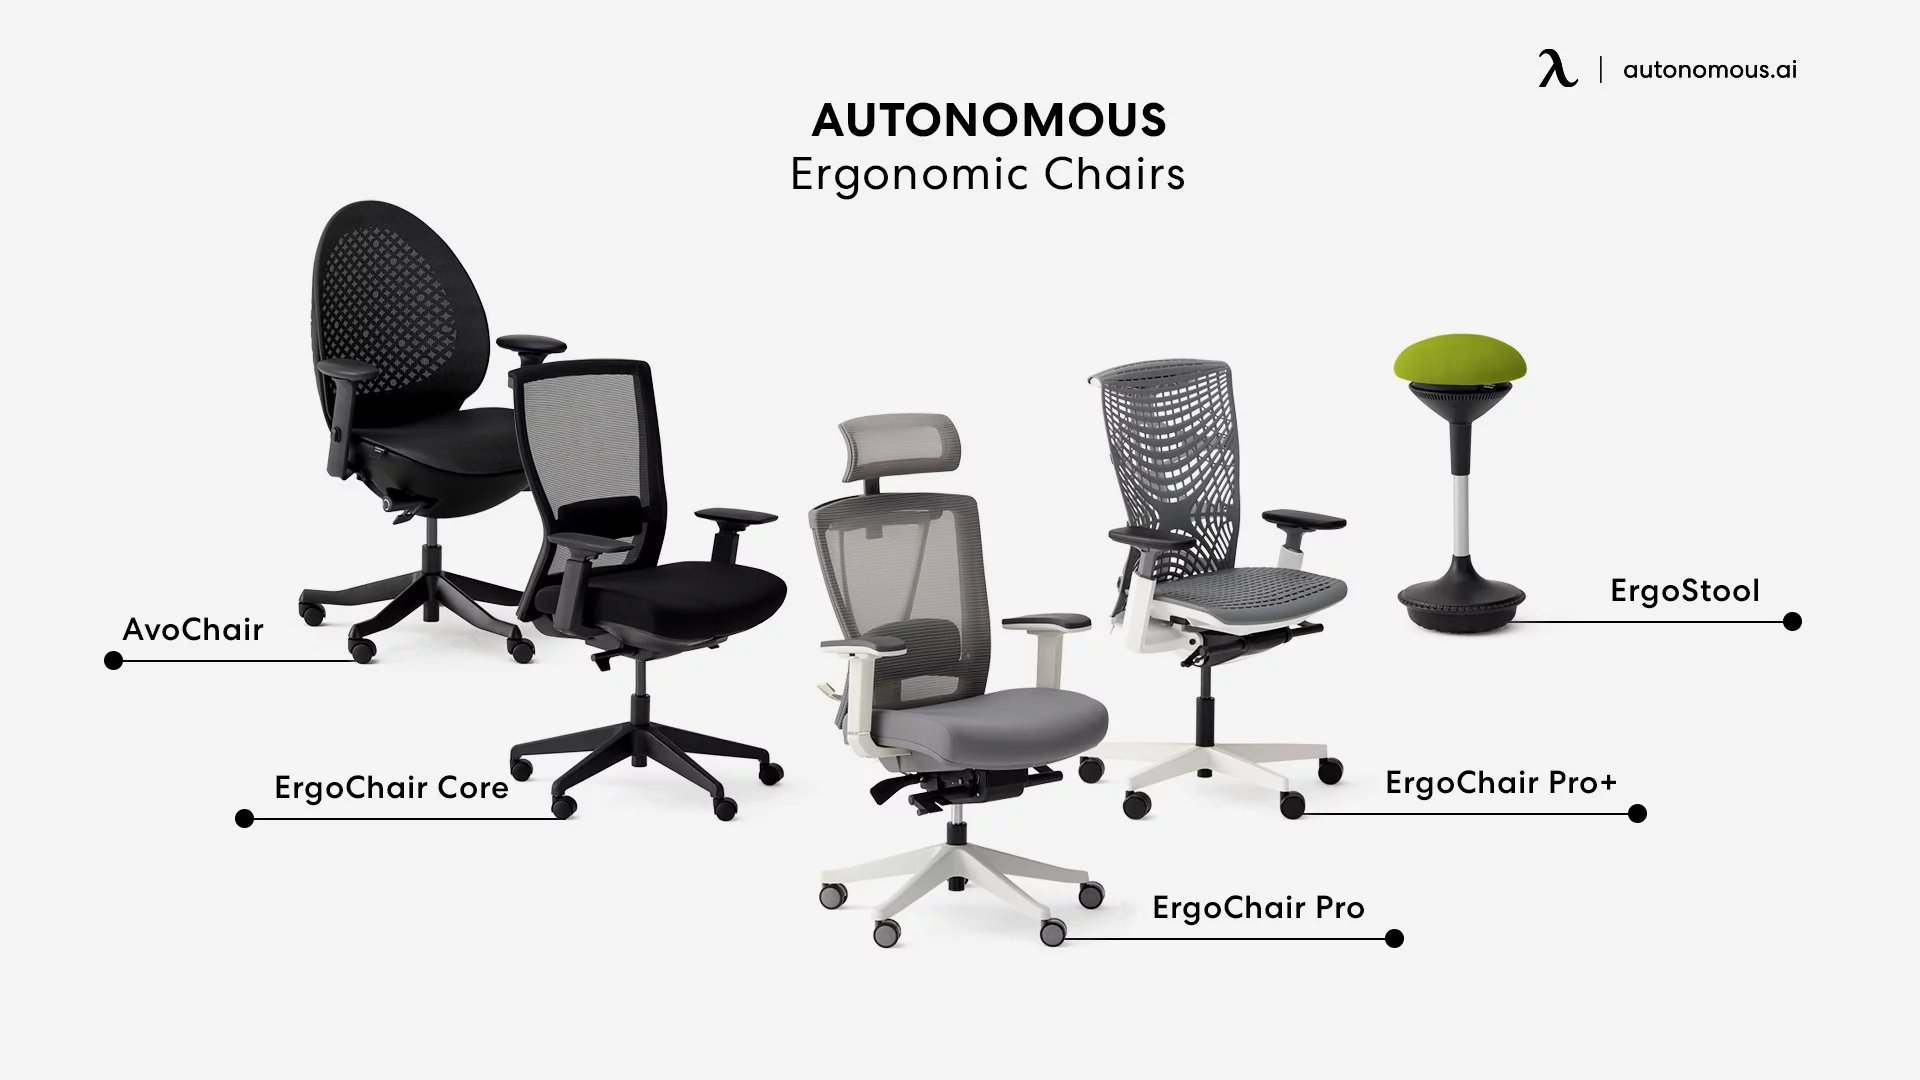 Autonomous quality office chair brands